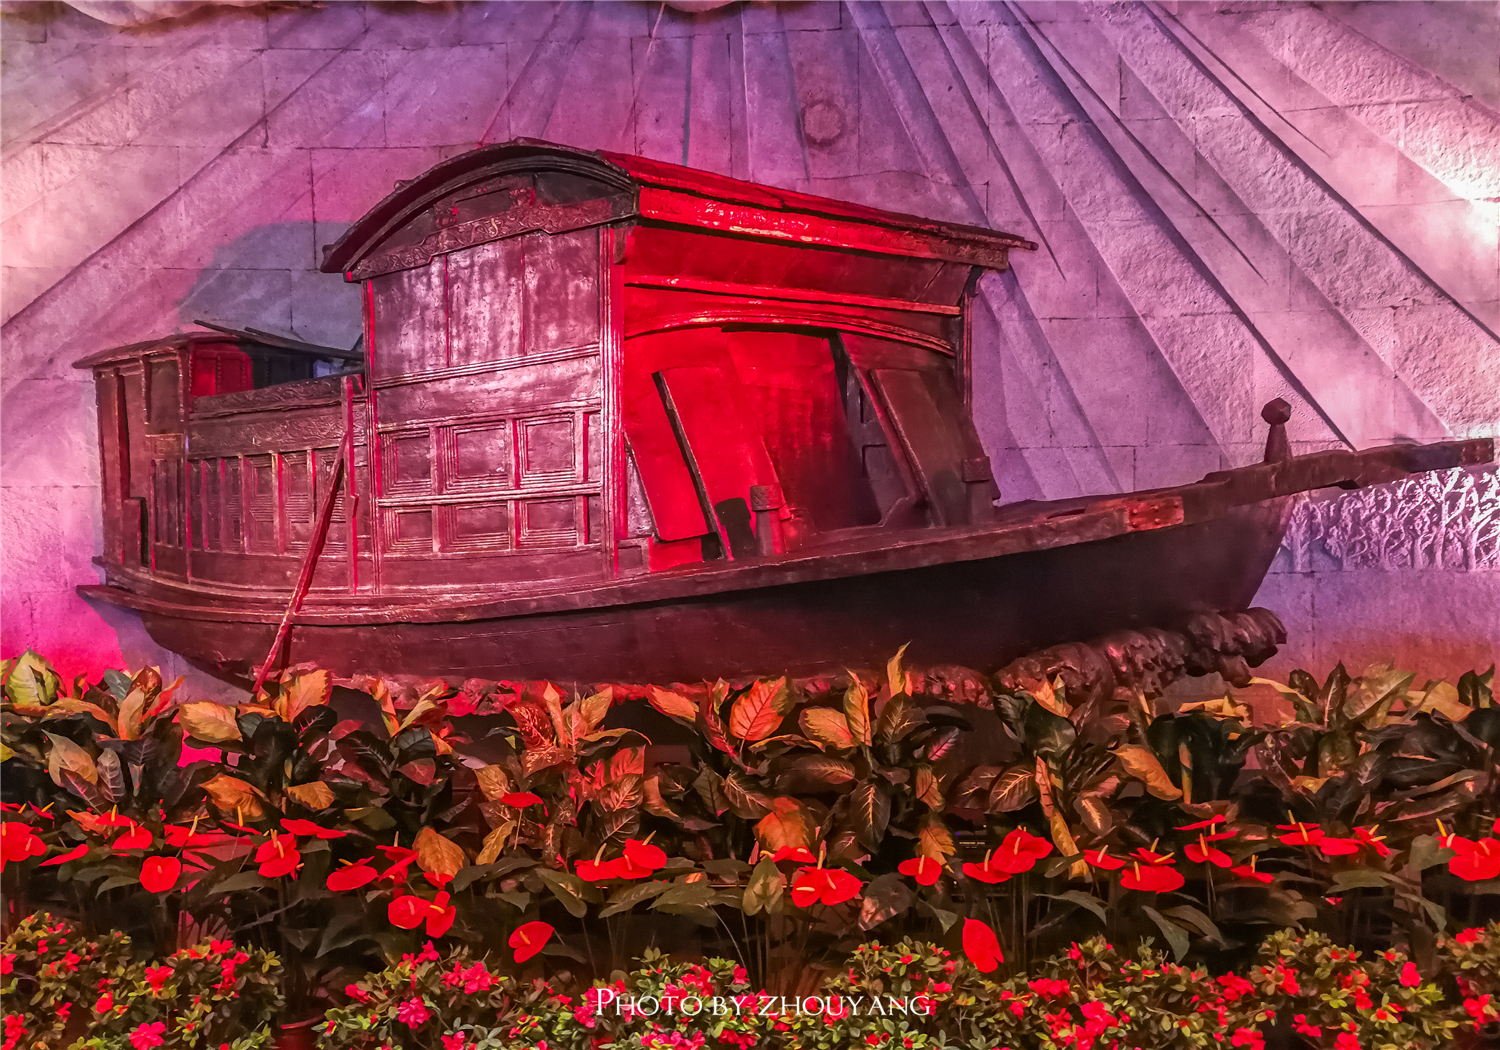 鲜花簇拥着红船,而红船两侧的浮雕则再现中国近代历史上的重大事件